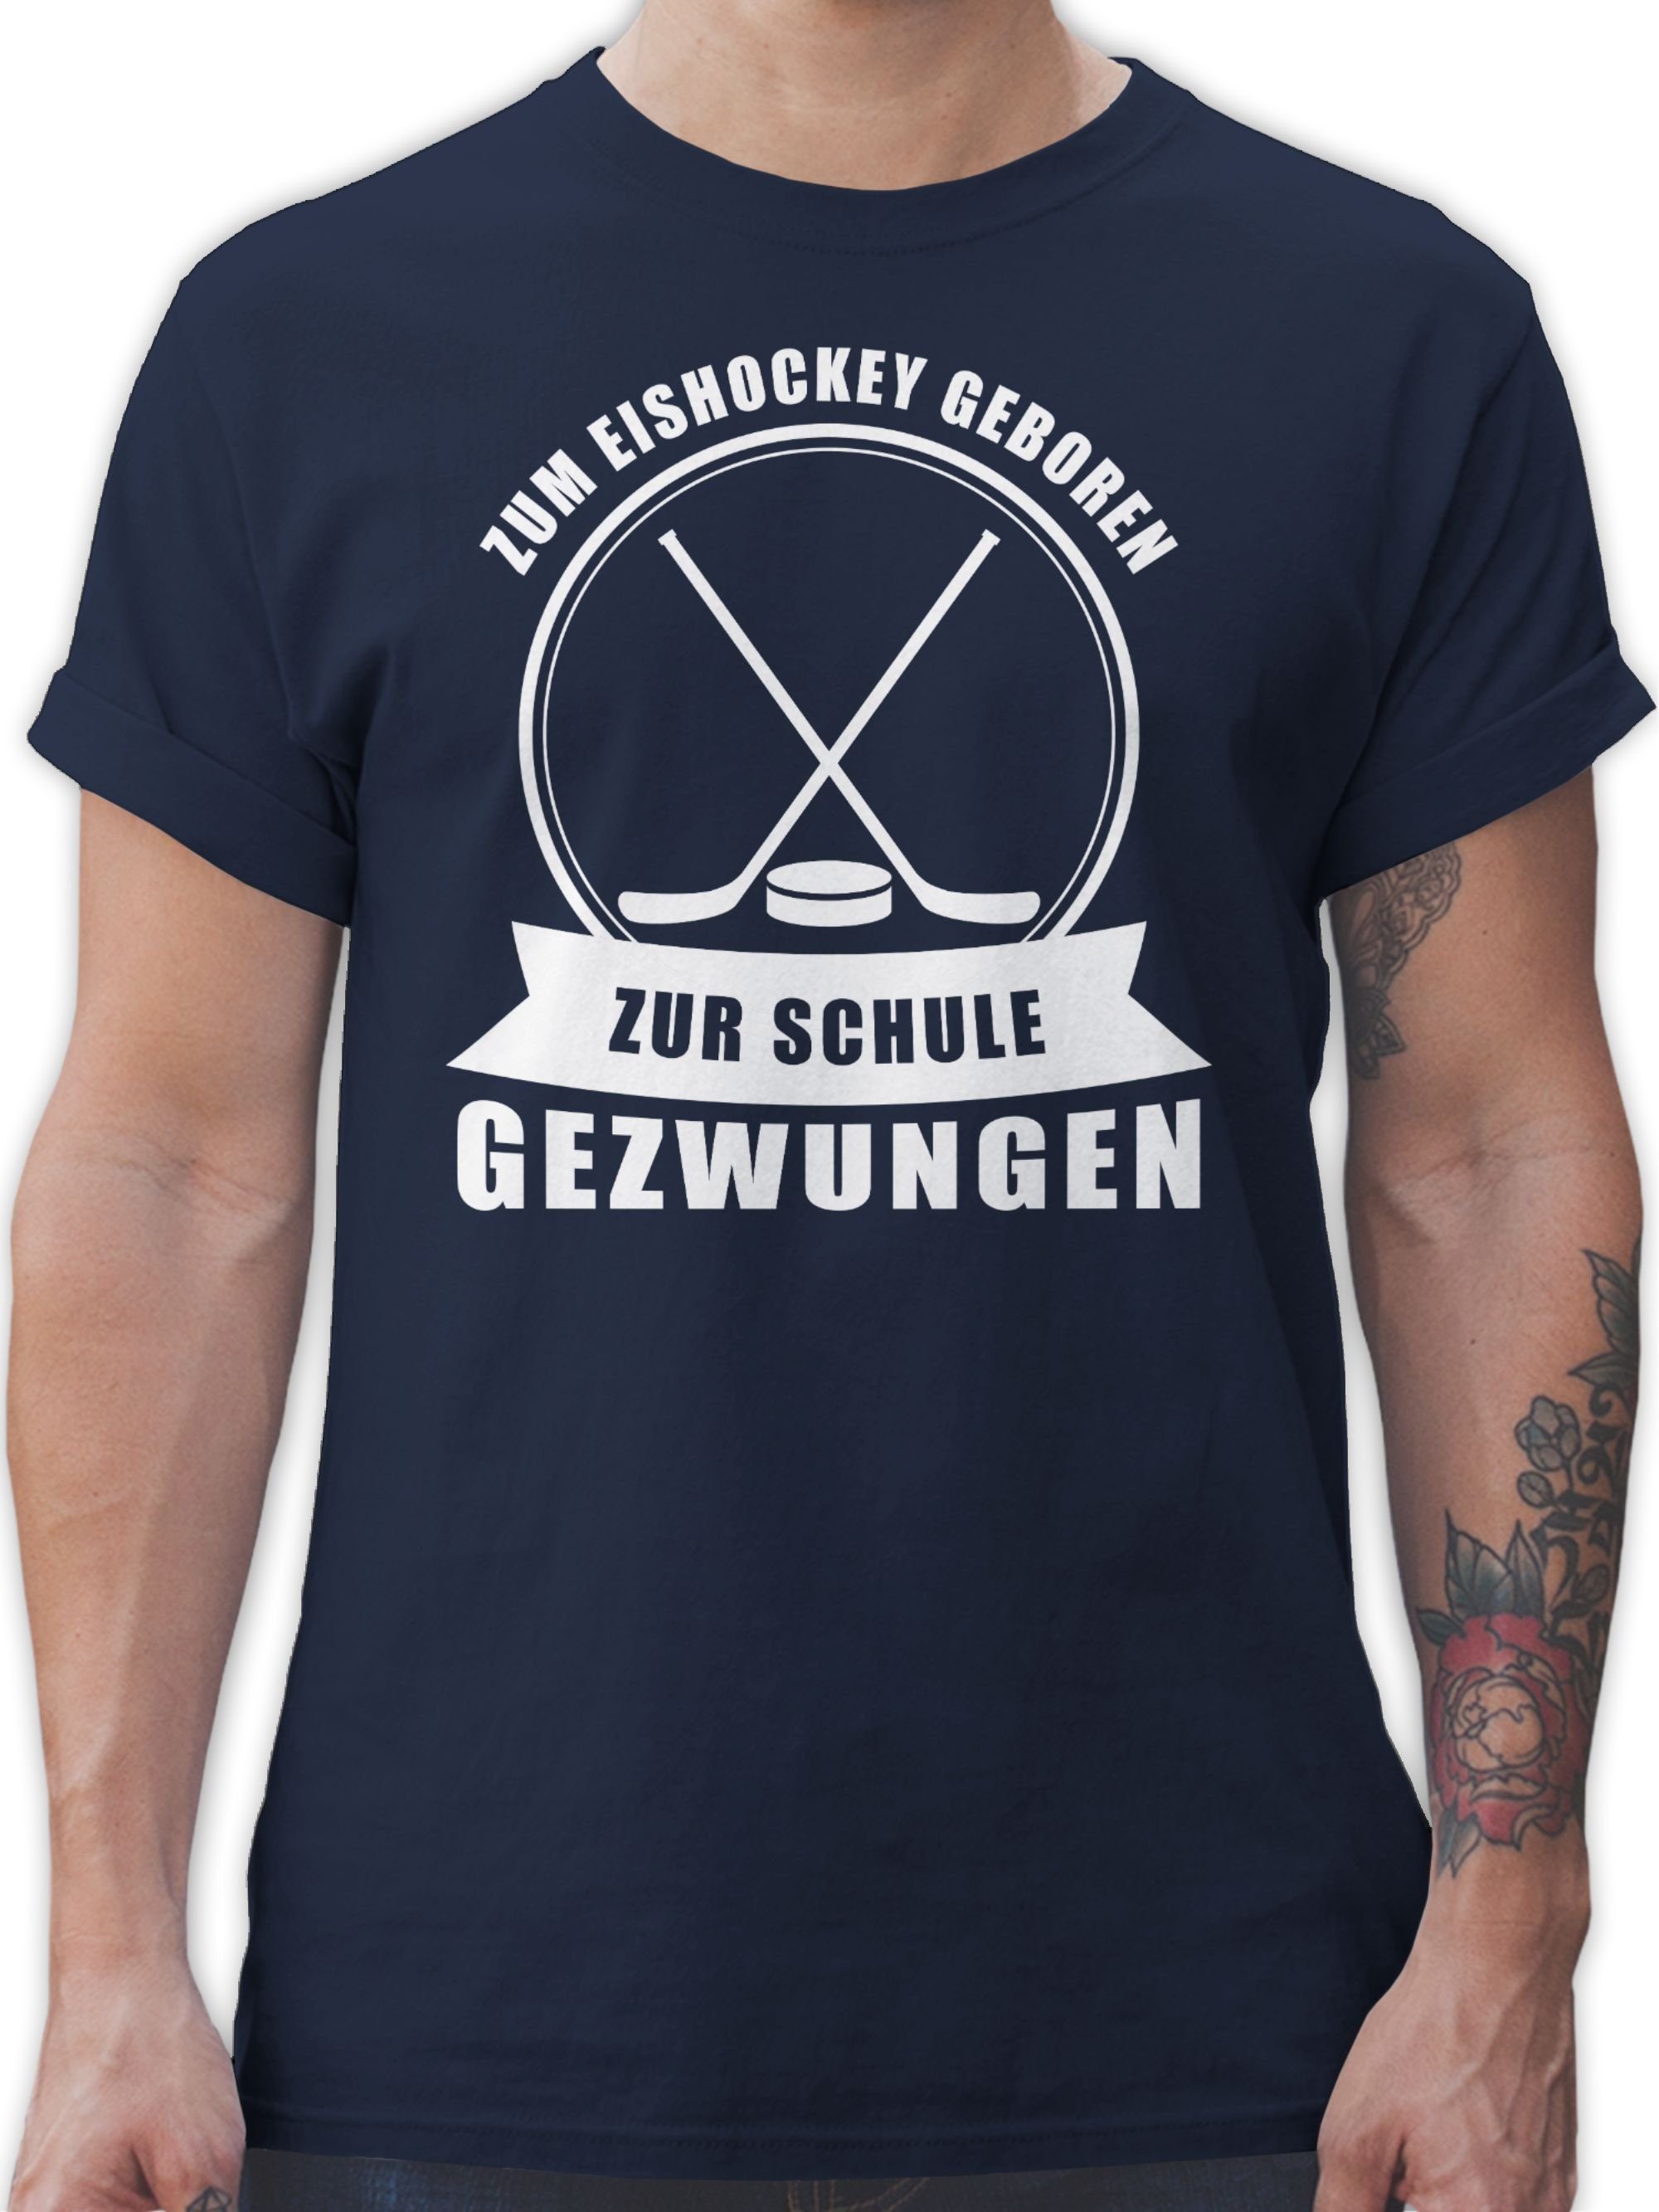 Navy 2 Eishockey Blau Zur Zum Schule Shirtracer gezwungen T-Shirt geboren. Eishockey